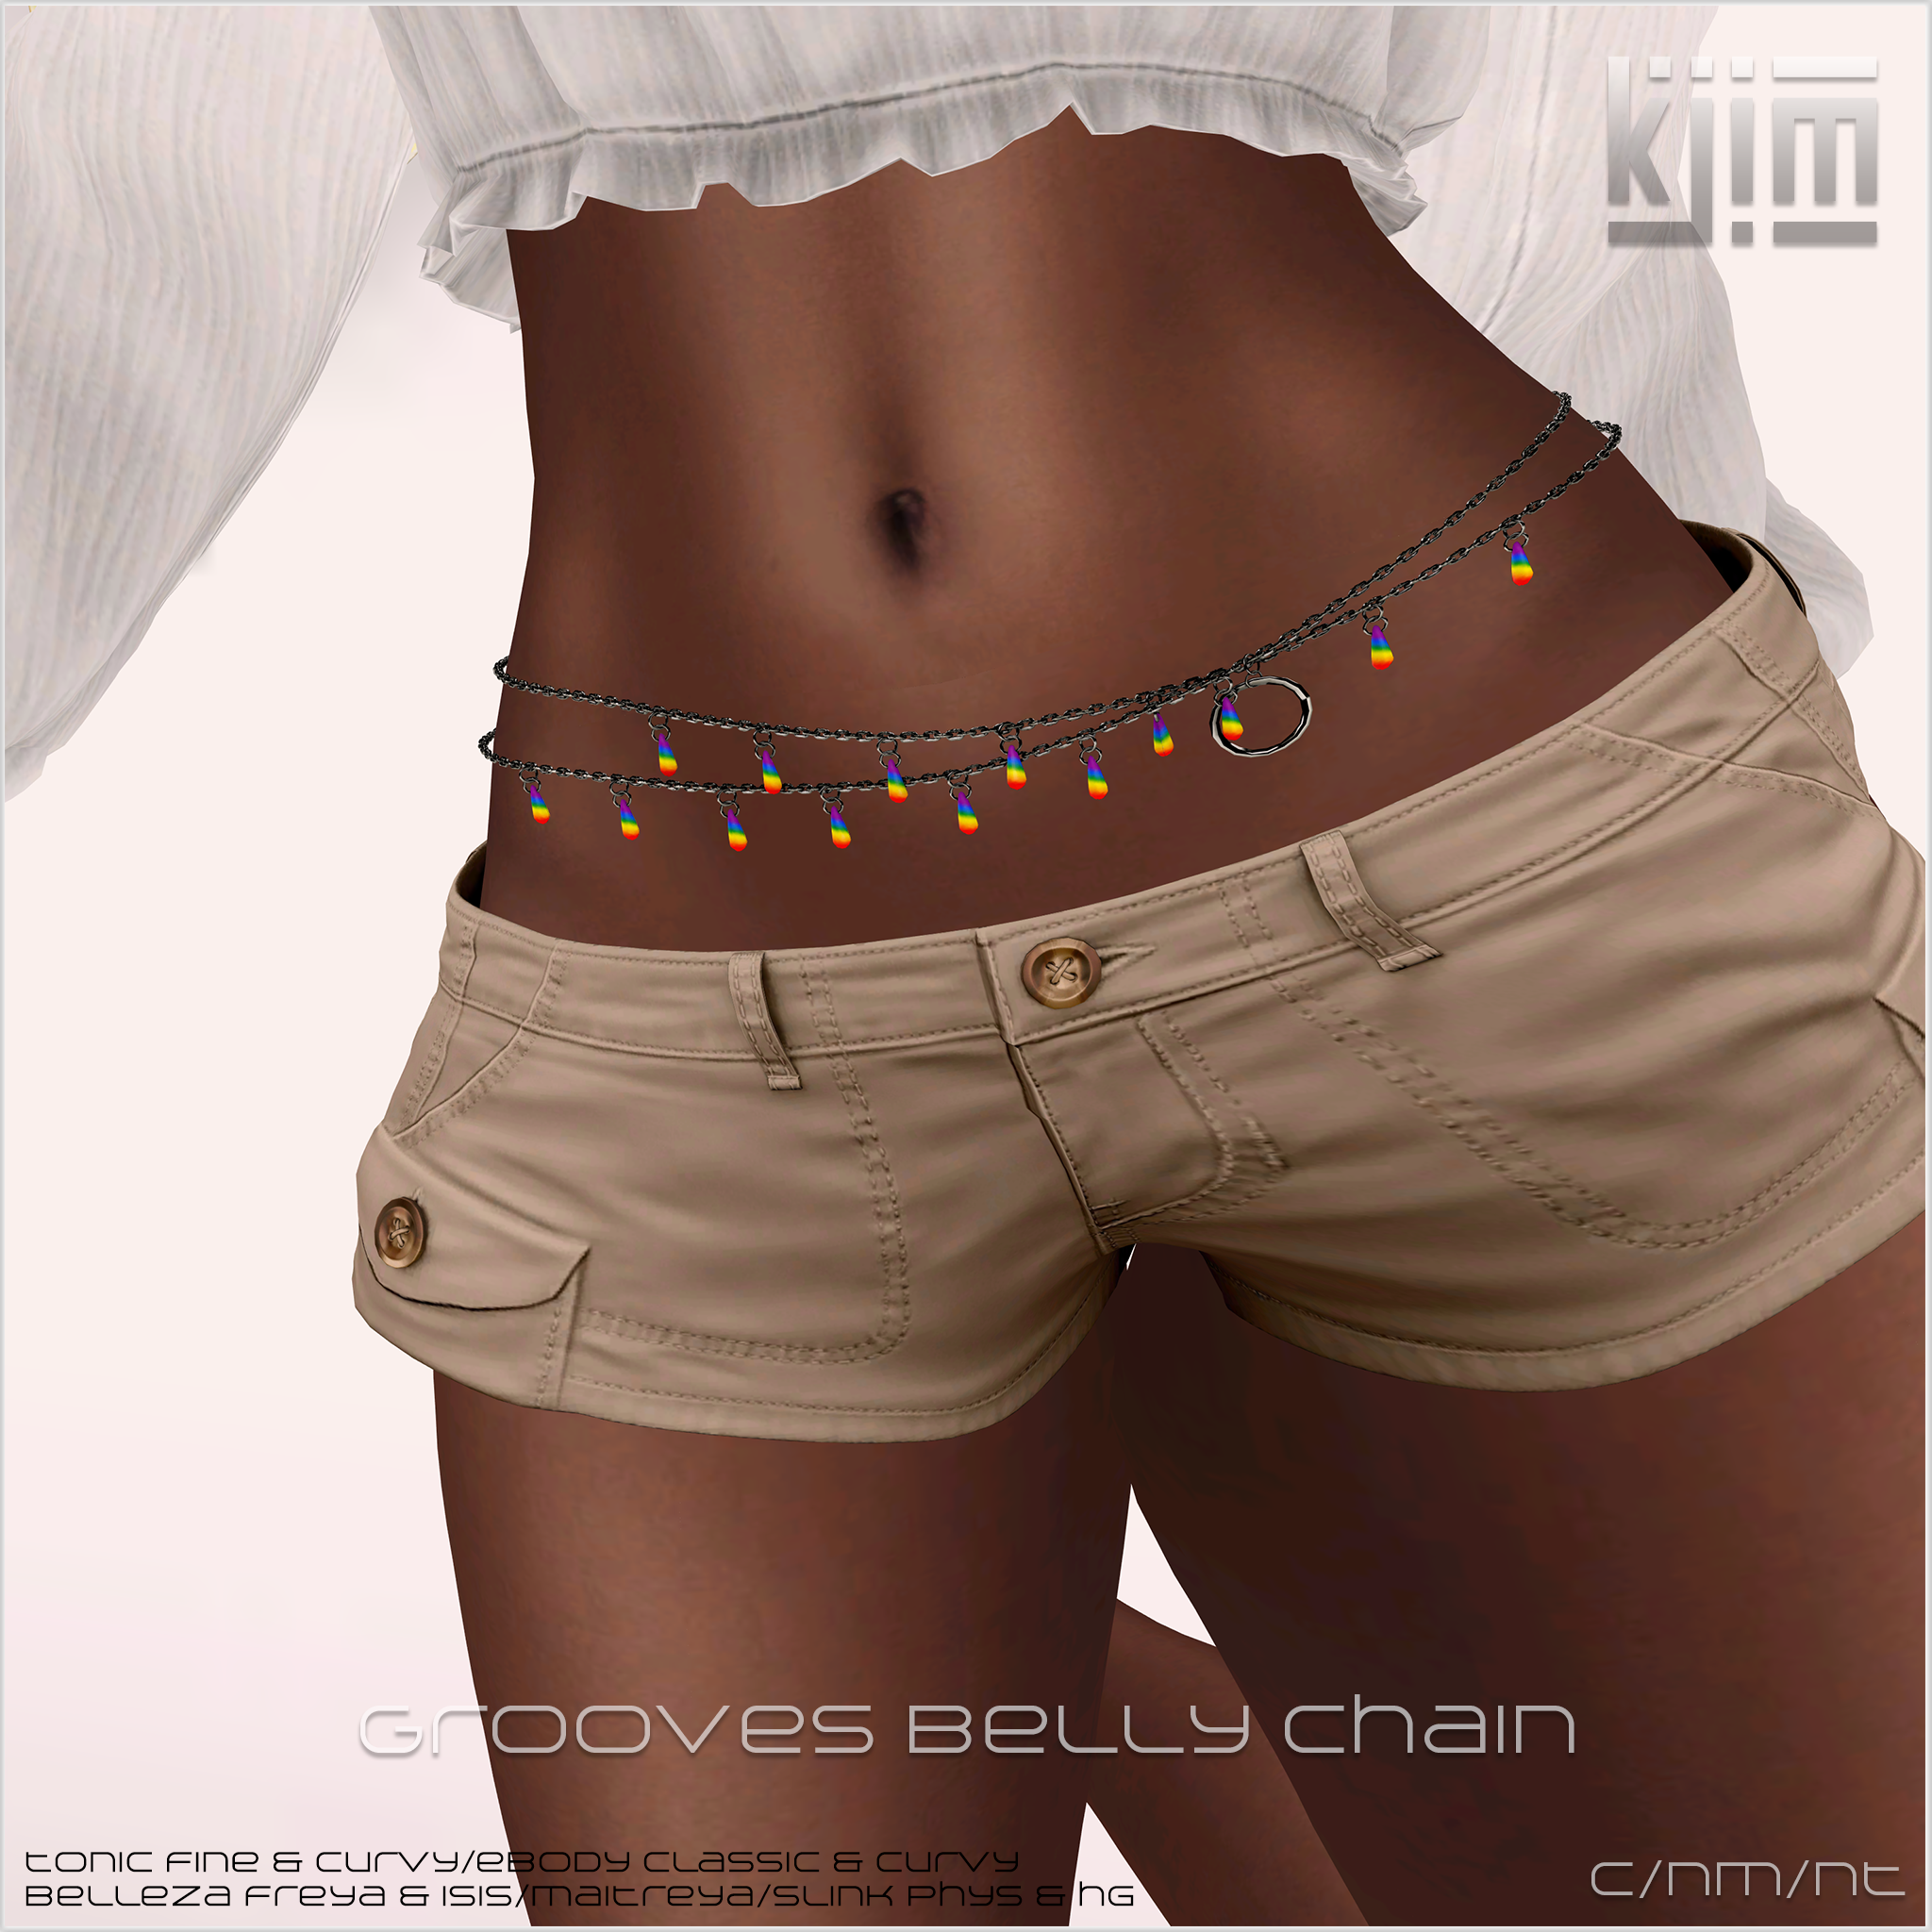 KJIm Grooves Belly Chain Ad